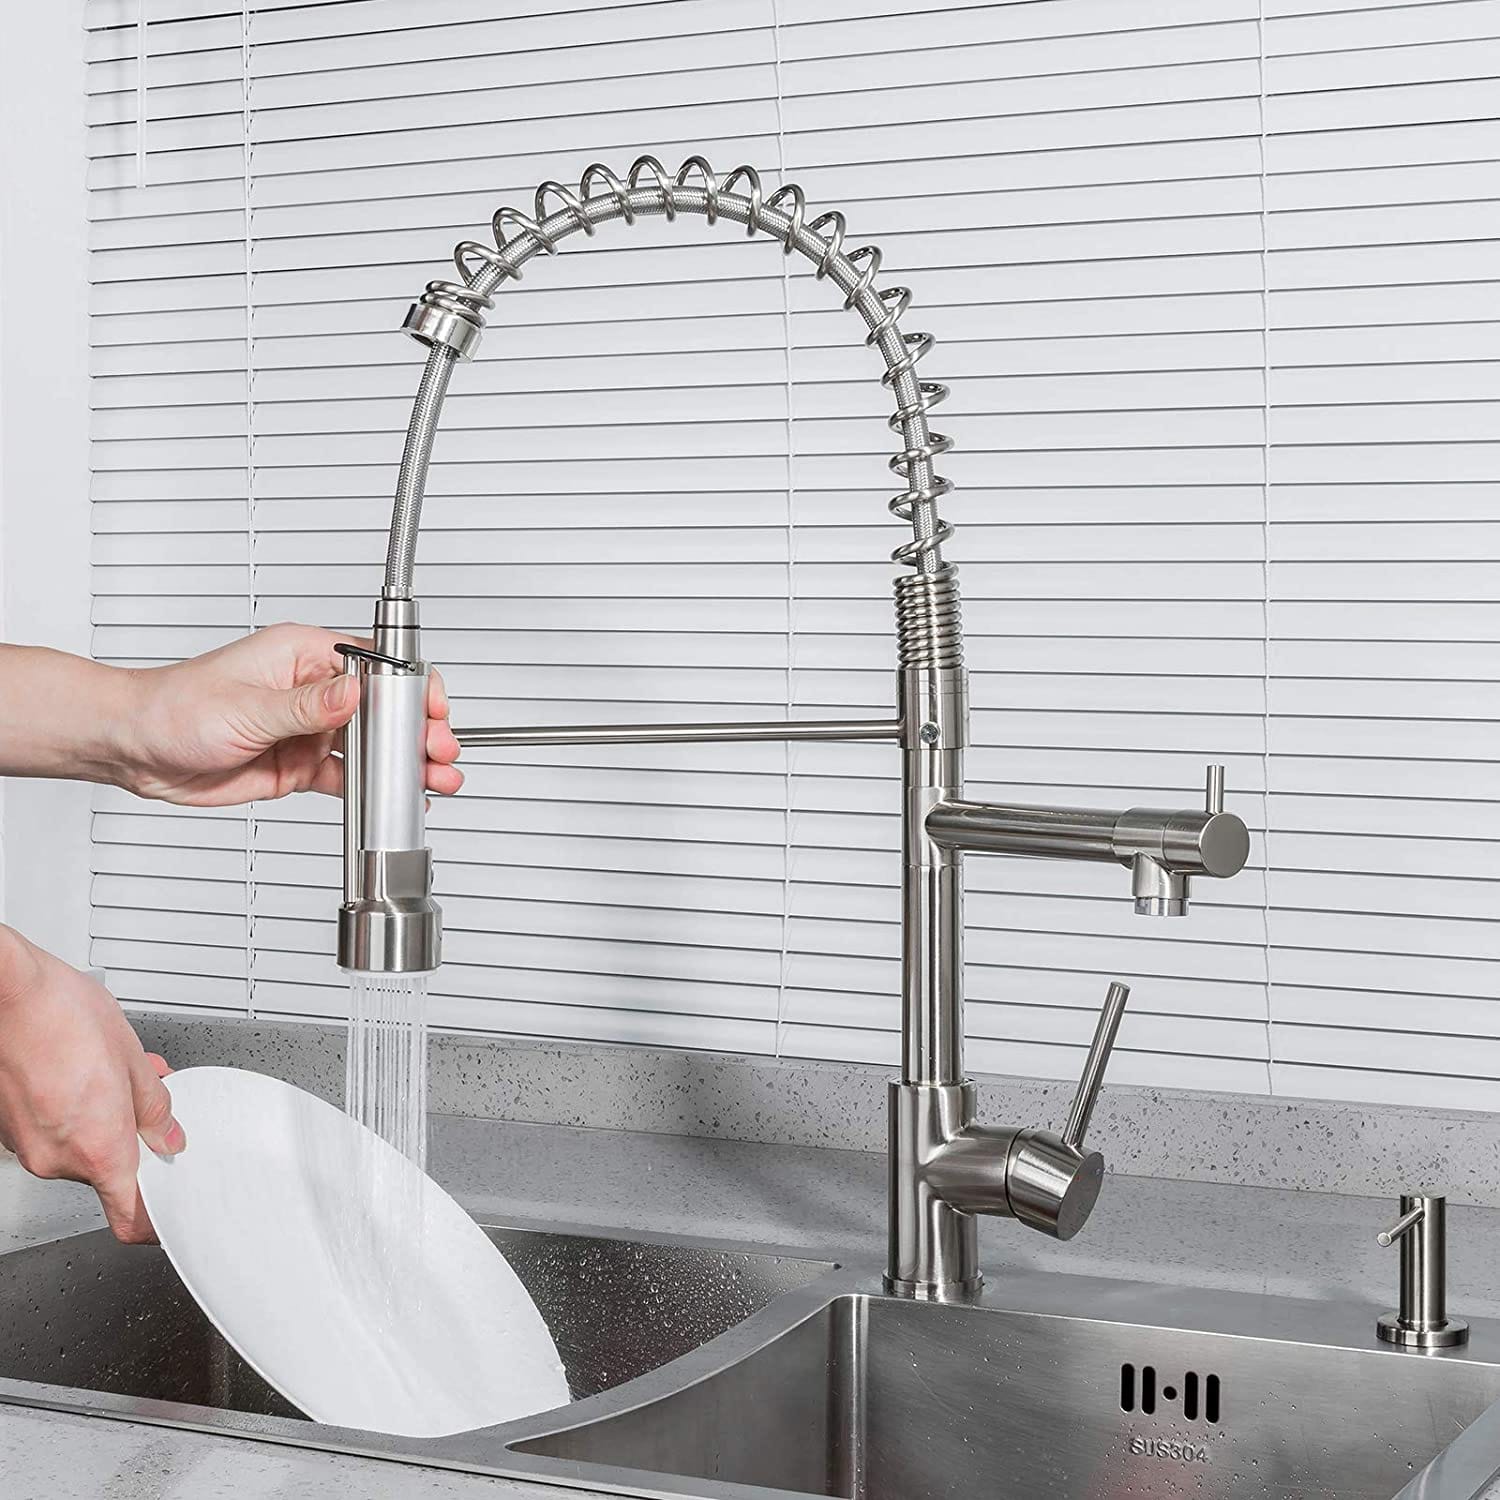 Down Spout Spray Flexible Kitchen Faucet (2)